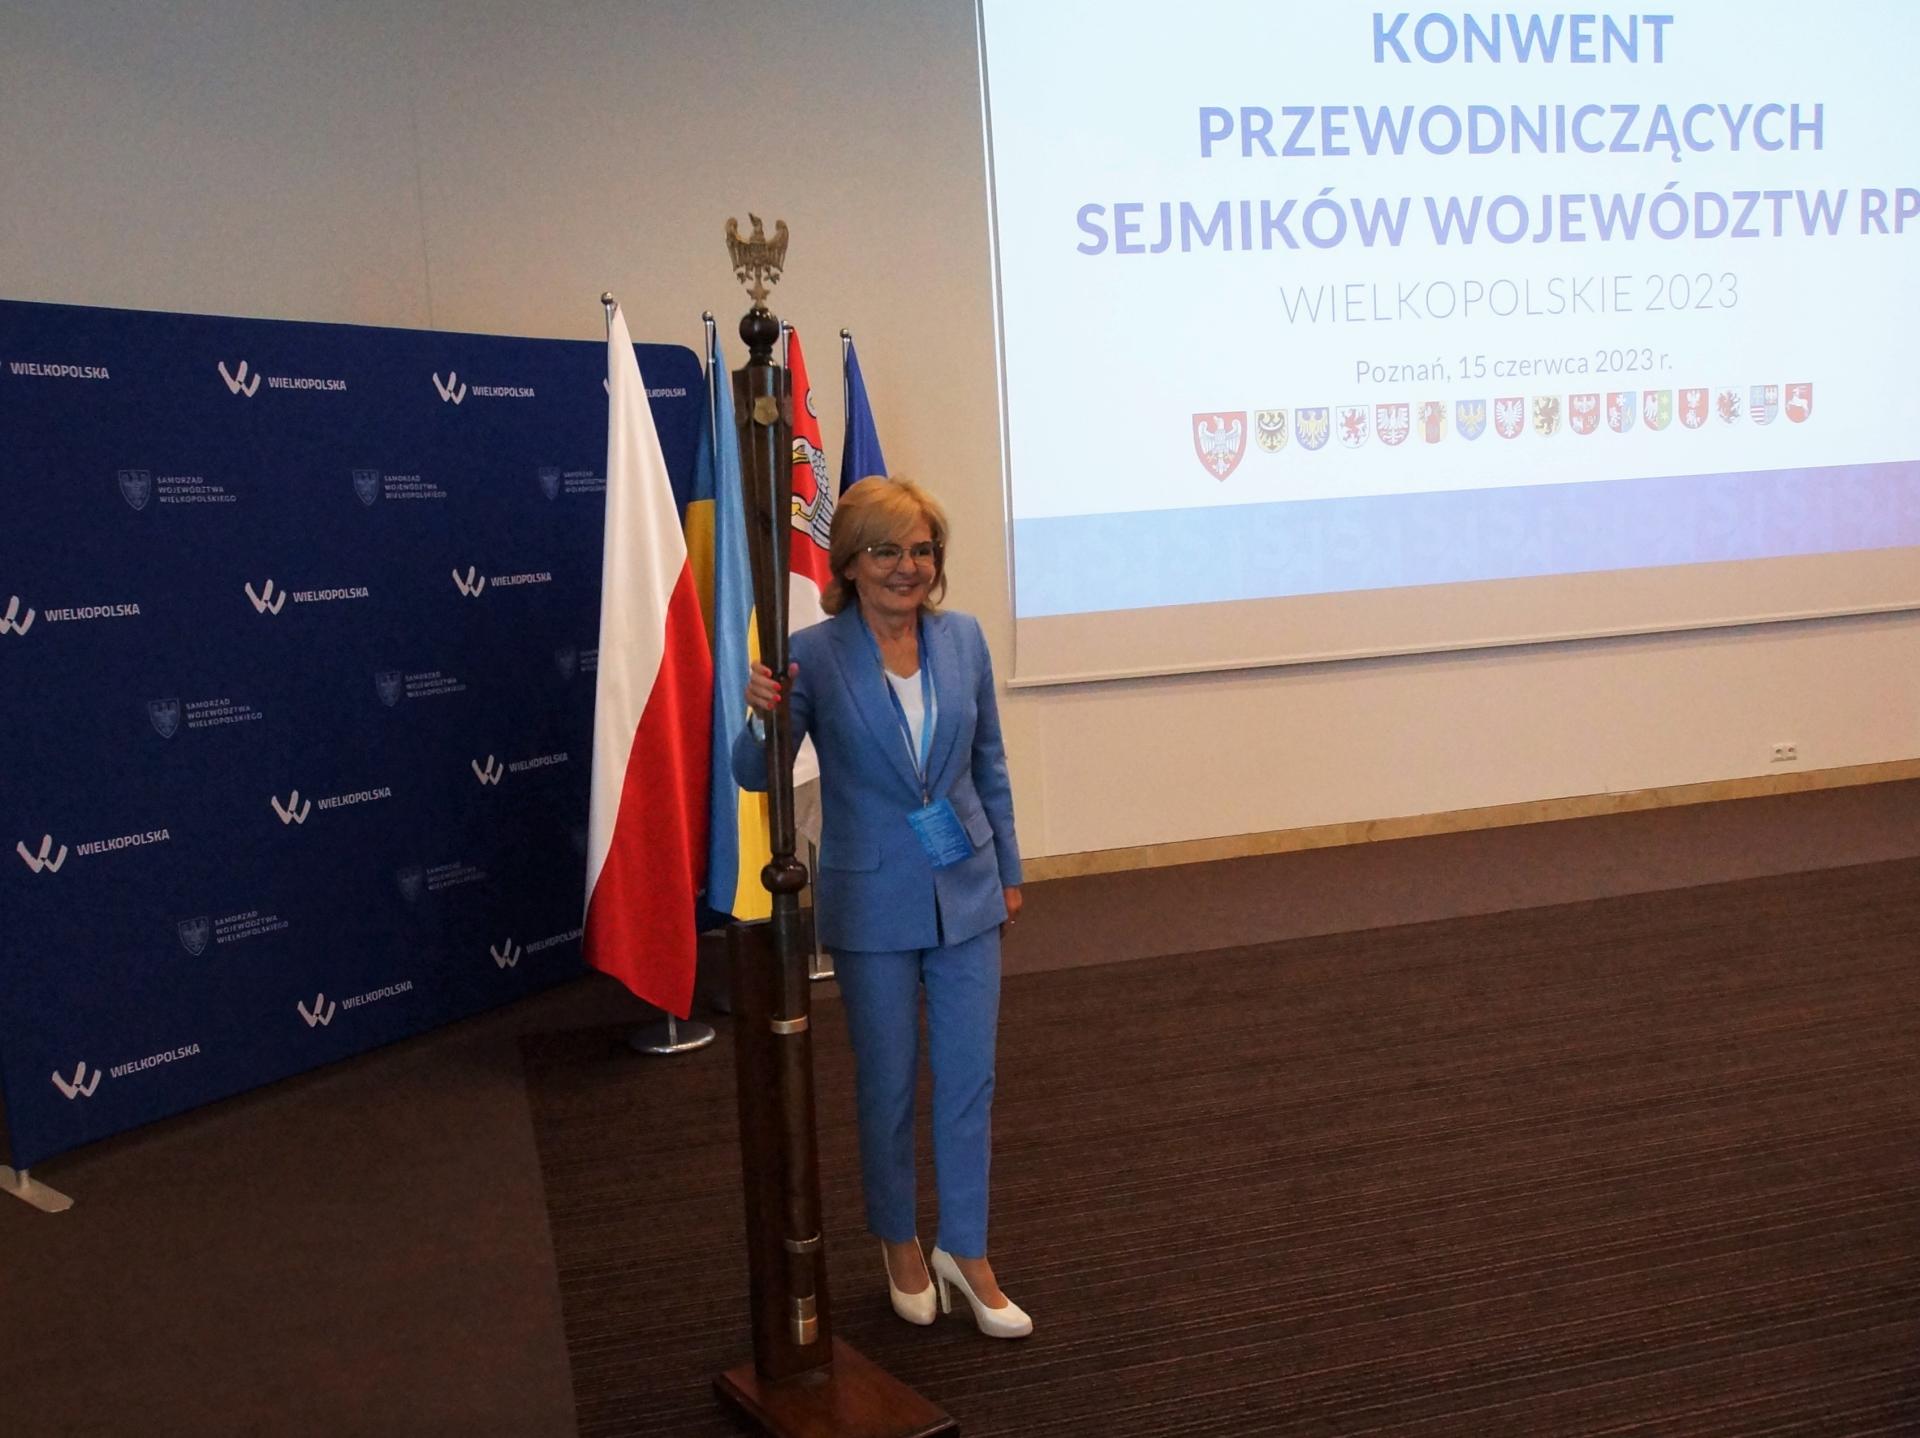  Samorządowcy z polskich regionów debatowali w Poznaniu  - zobacz więcej